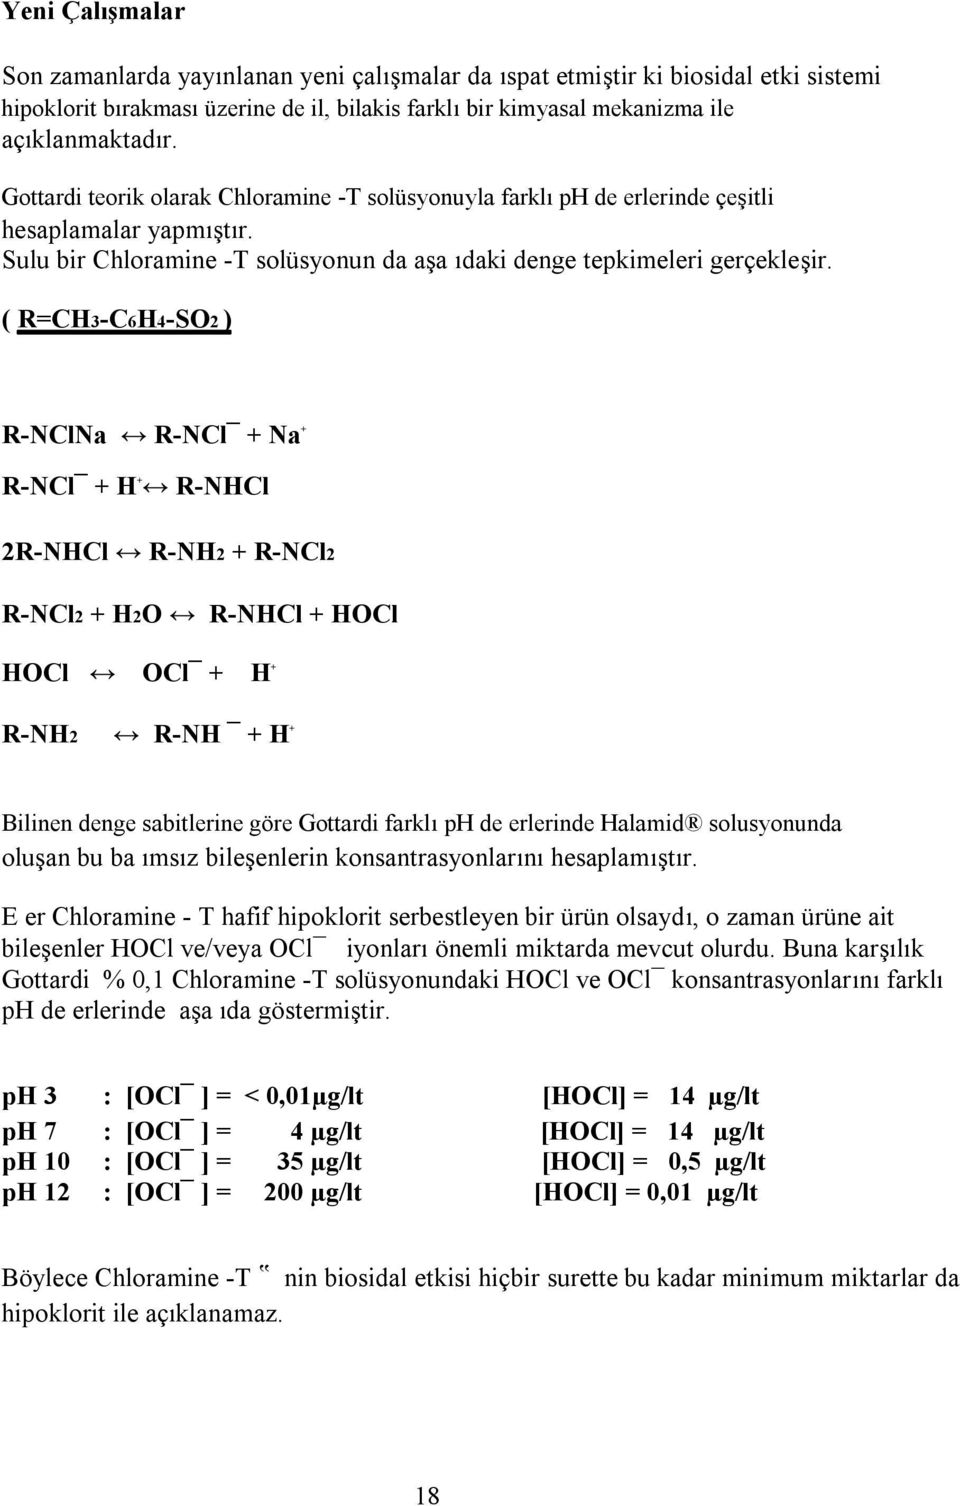 ( R=CH3-C6H4-SO2 ) R-NClNa R-NCl + Na + R-NCl + H + R-NHCl 2R-NHCl R-NH2 + R-NCl2 R-NCl2 + H2O R-NHCl + HOCl HOCl OCl + H + R-NH2 R-NH + H + Bilinen denge sabitlerine göre Gottardi farklı ph de